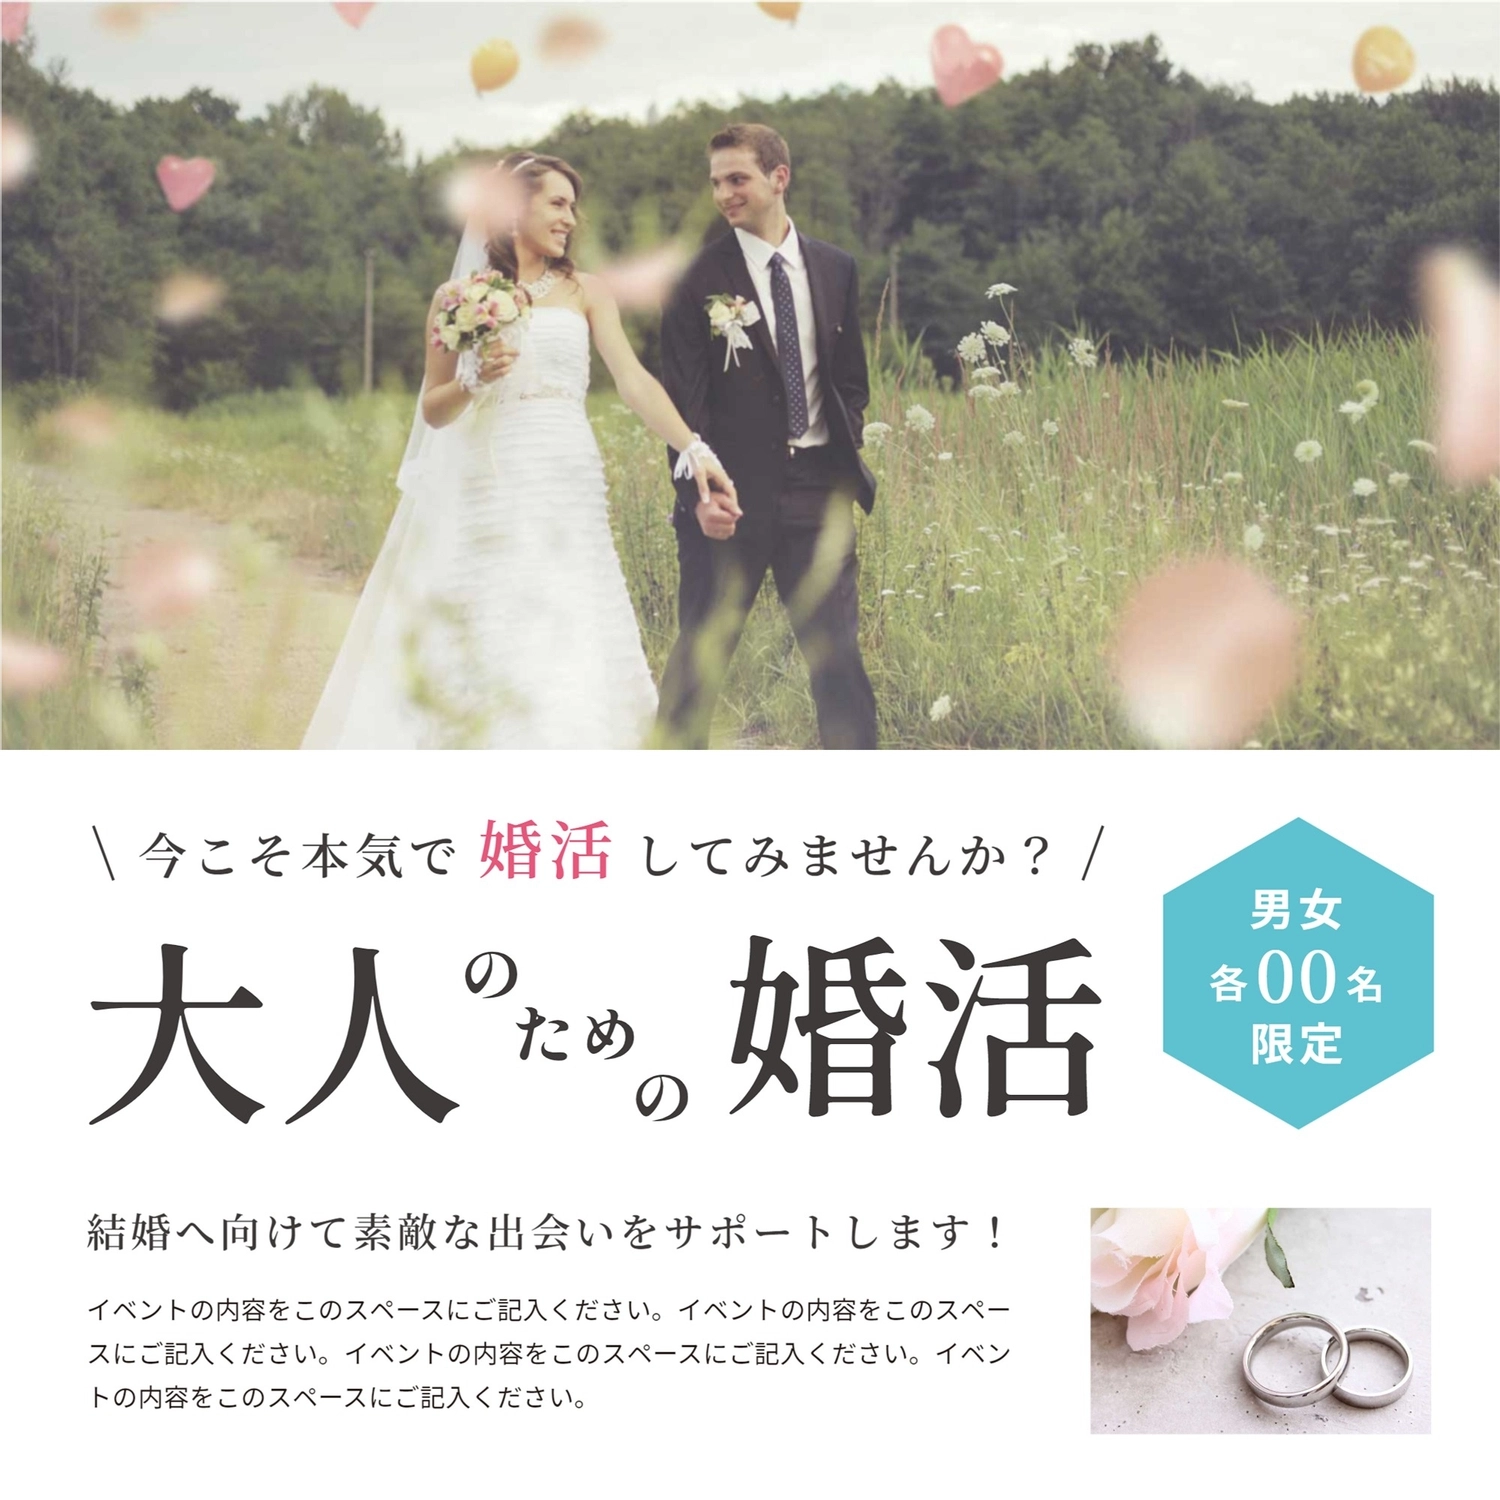 大人のための婚活広告テンプレート, Instagram 廣告, 婚姻介紹所, 婚介, IG廣告 模板